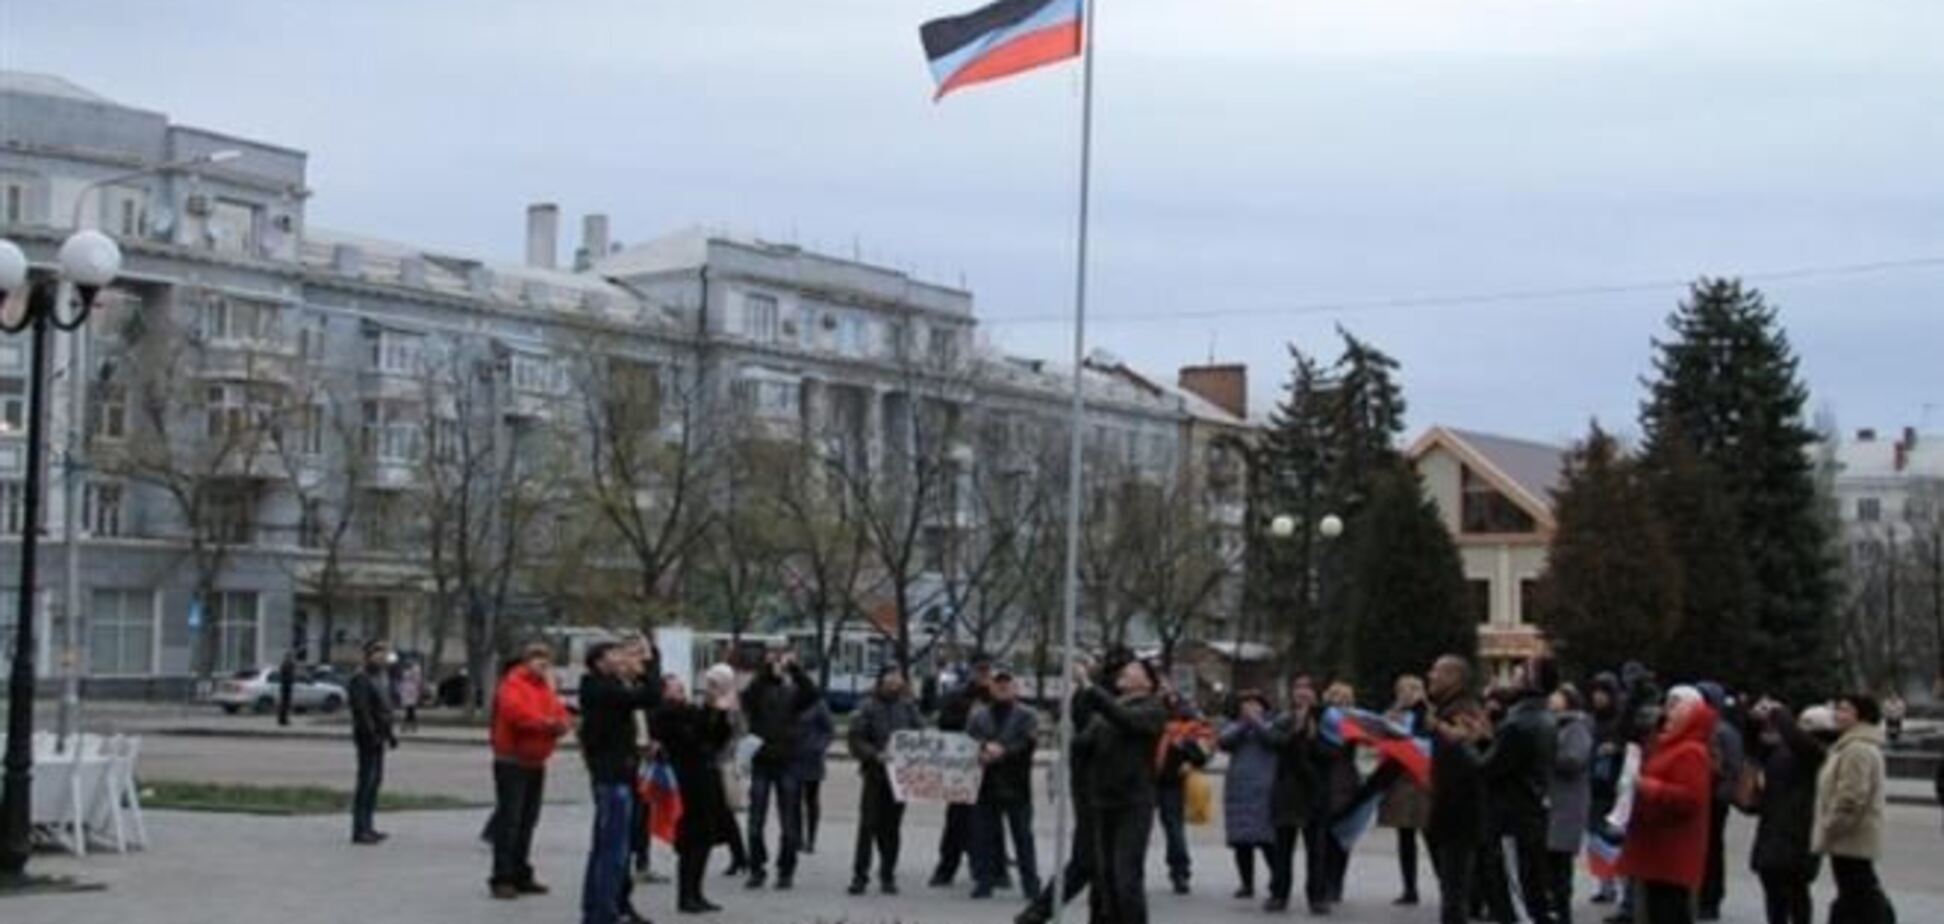 Над міськрадою Артемівська сепаратисти підняли свій прапор 